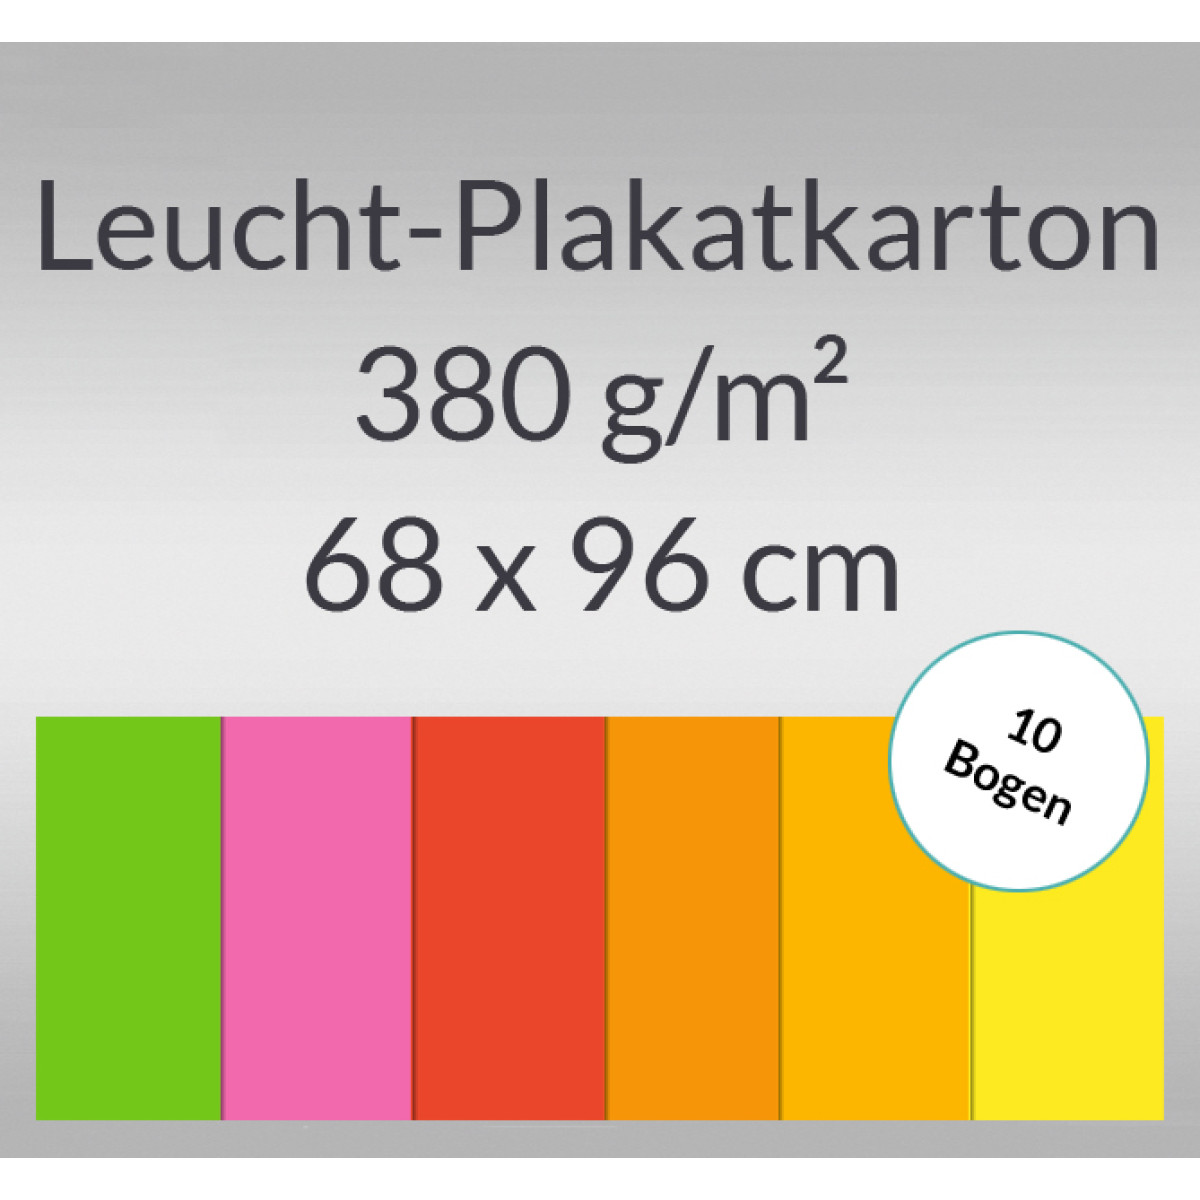 Leucht-Plakatkarton 380 g/qm 68 x 96 cm - 10 Bogen